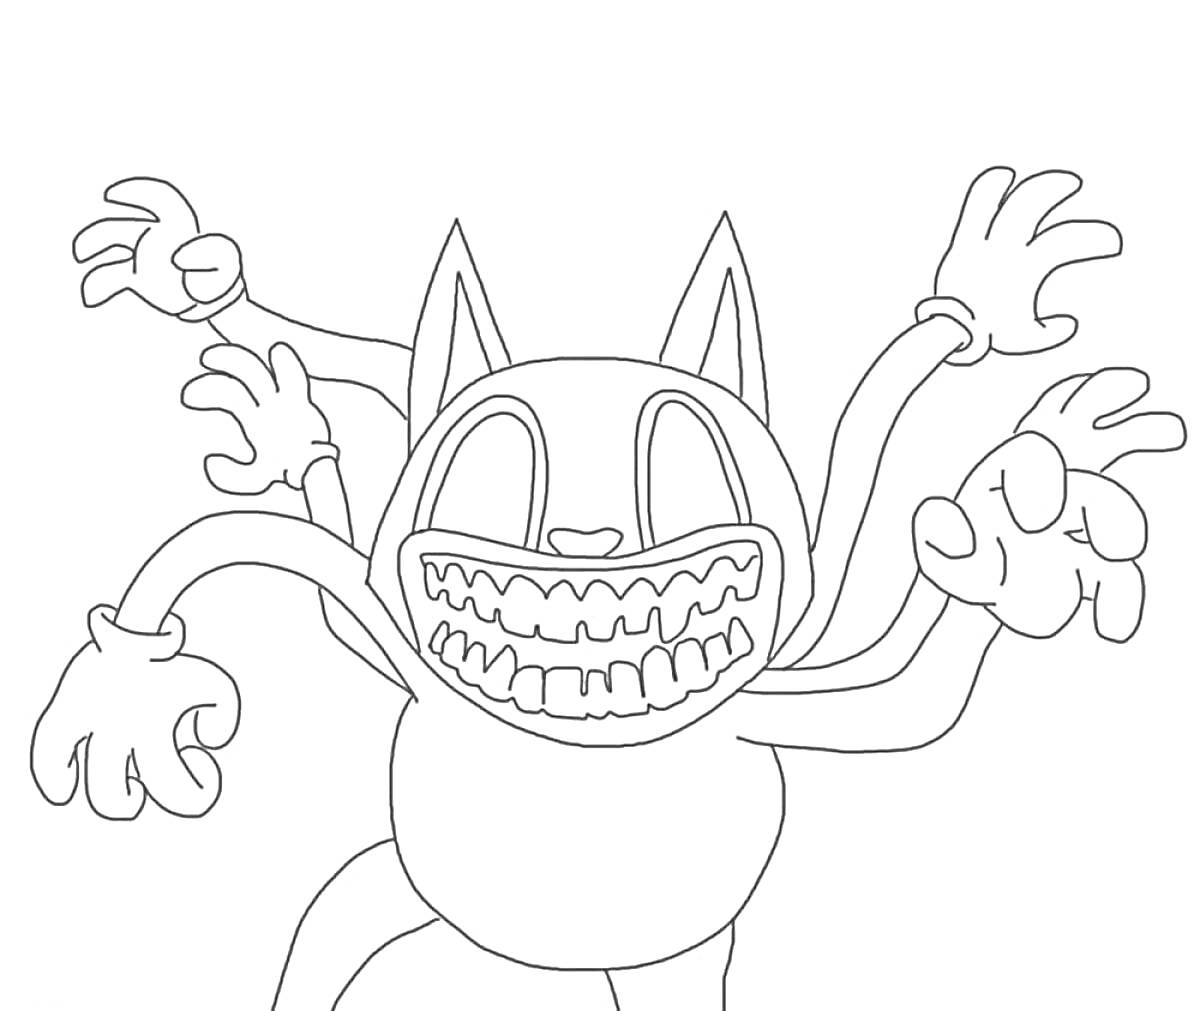 Раскраска Картун Кэт с четырьмя руками и широкой улыбкой